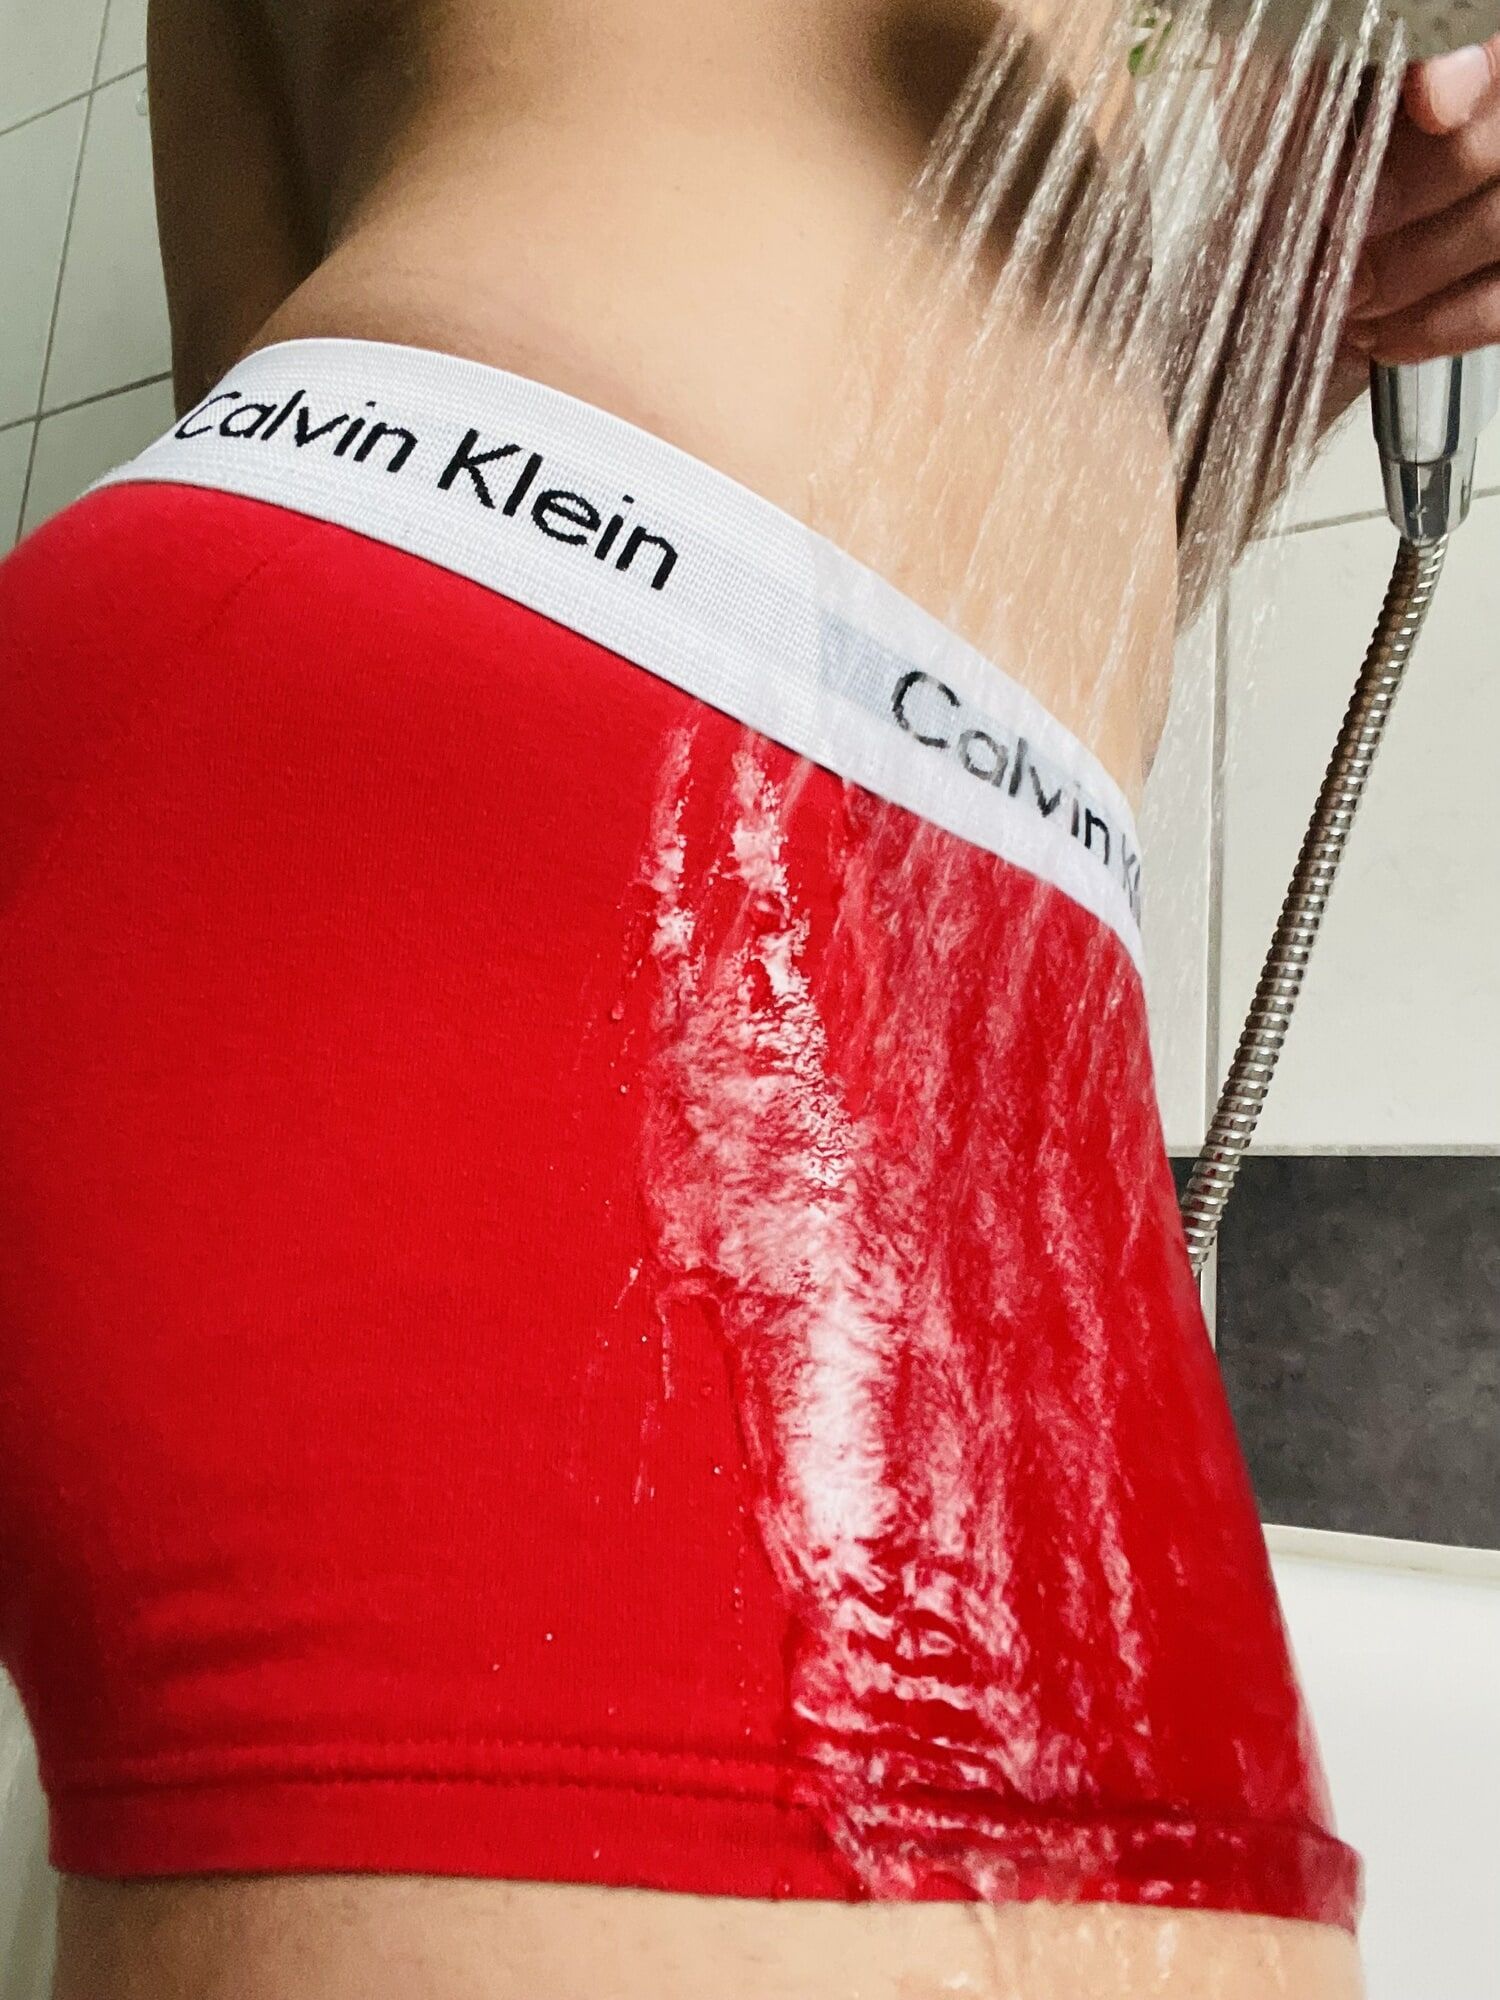 Wet Calvin Klein briefs